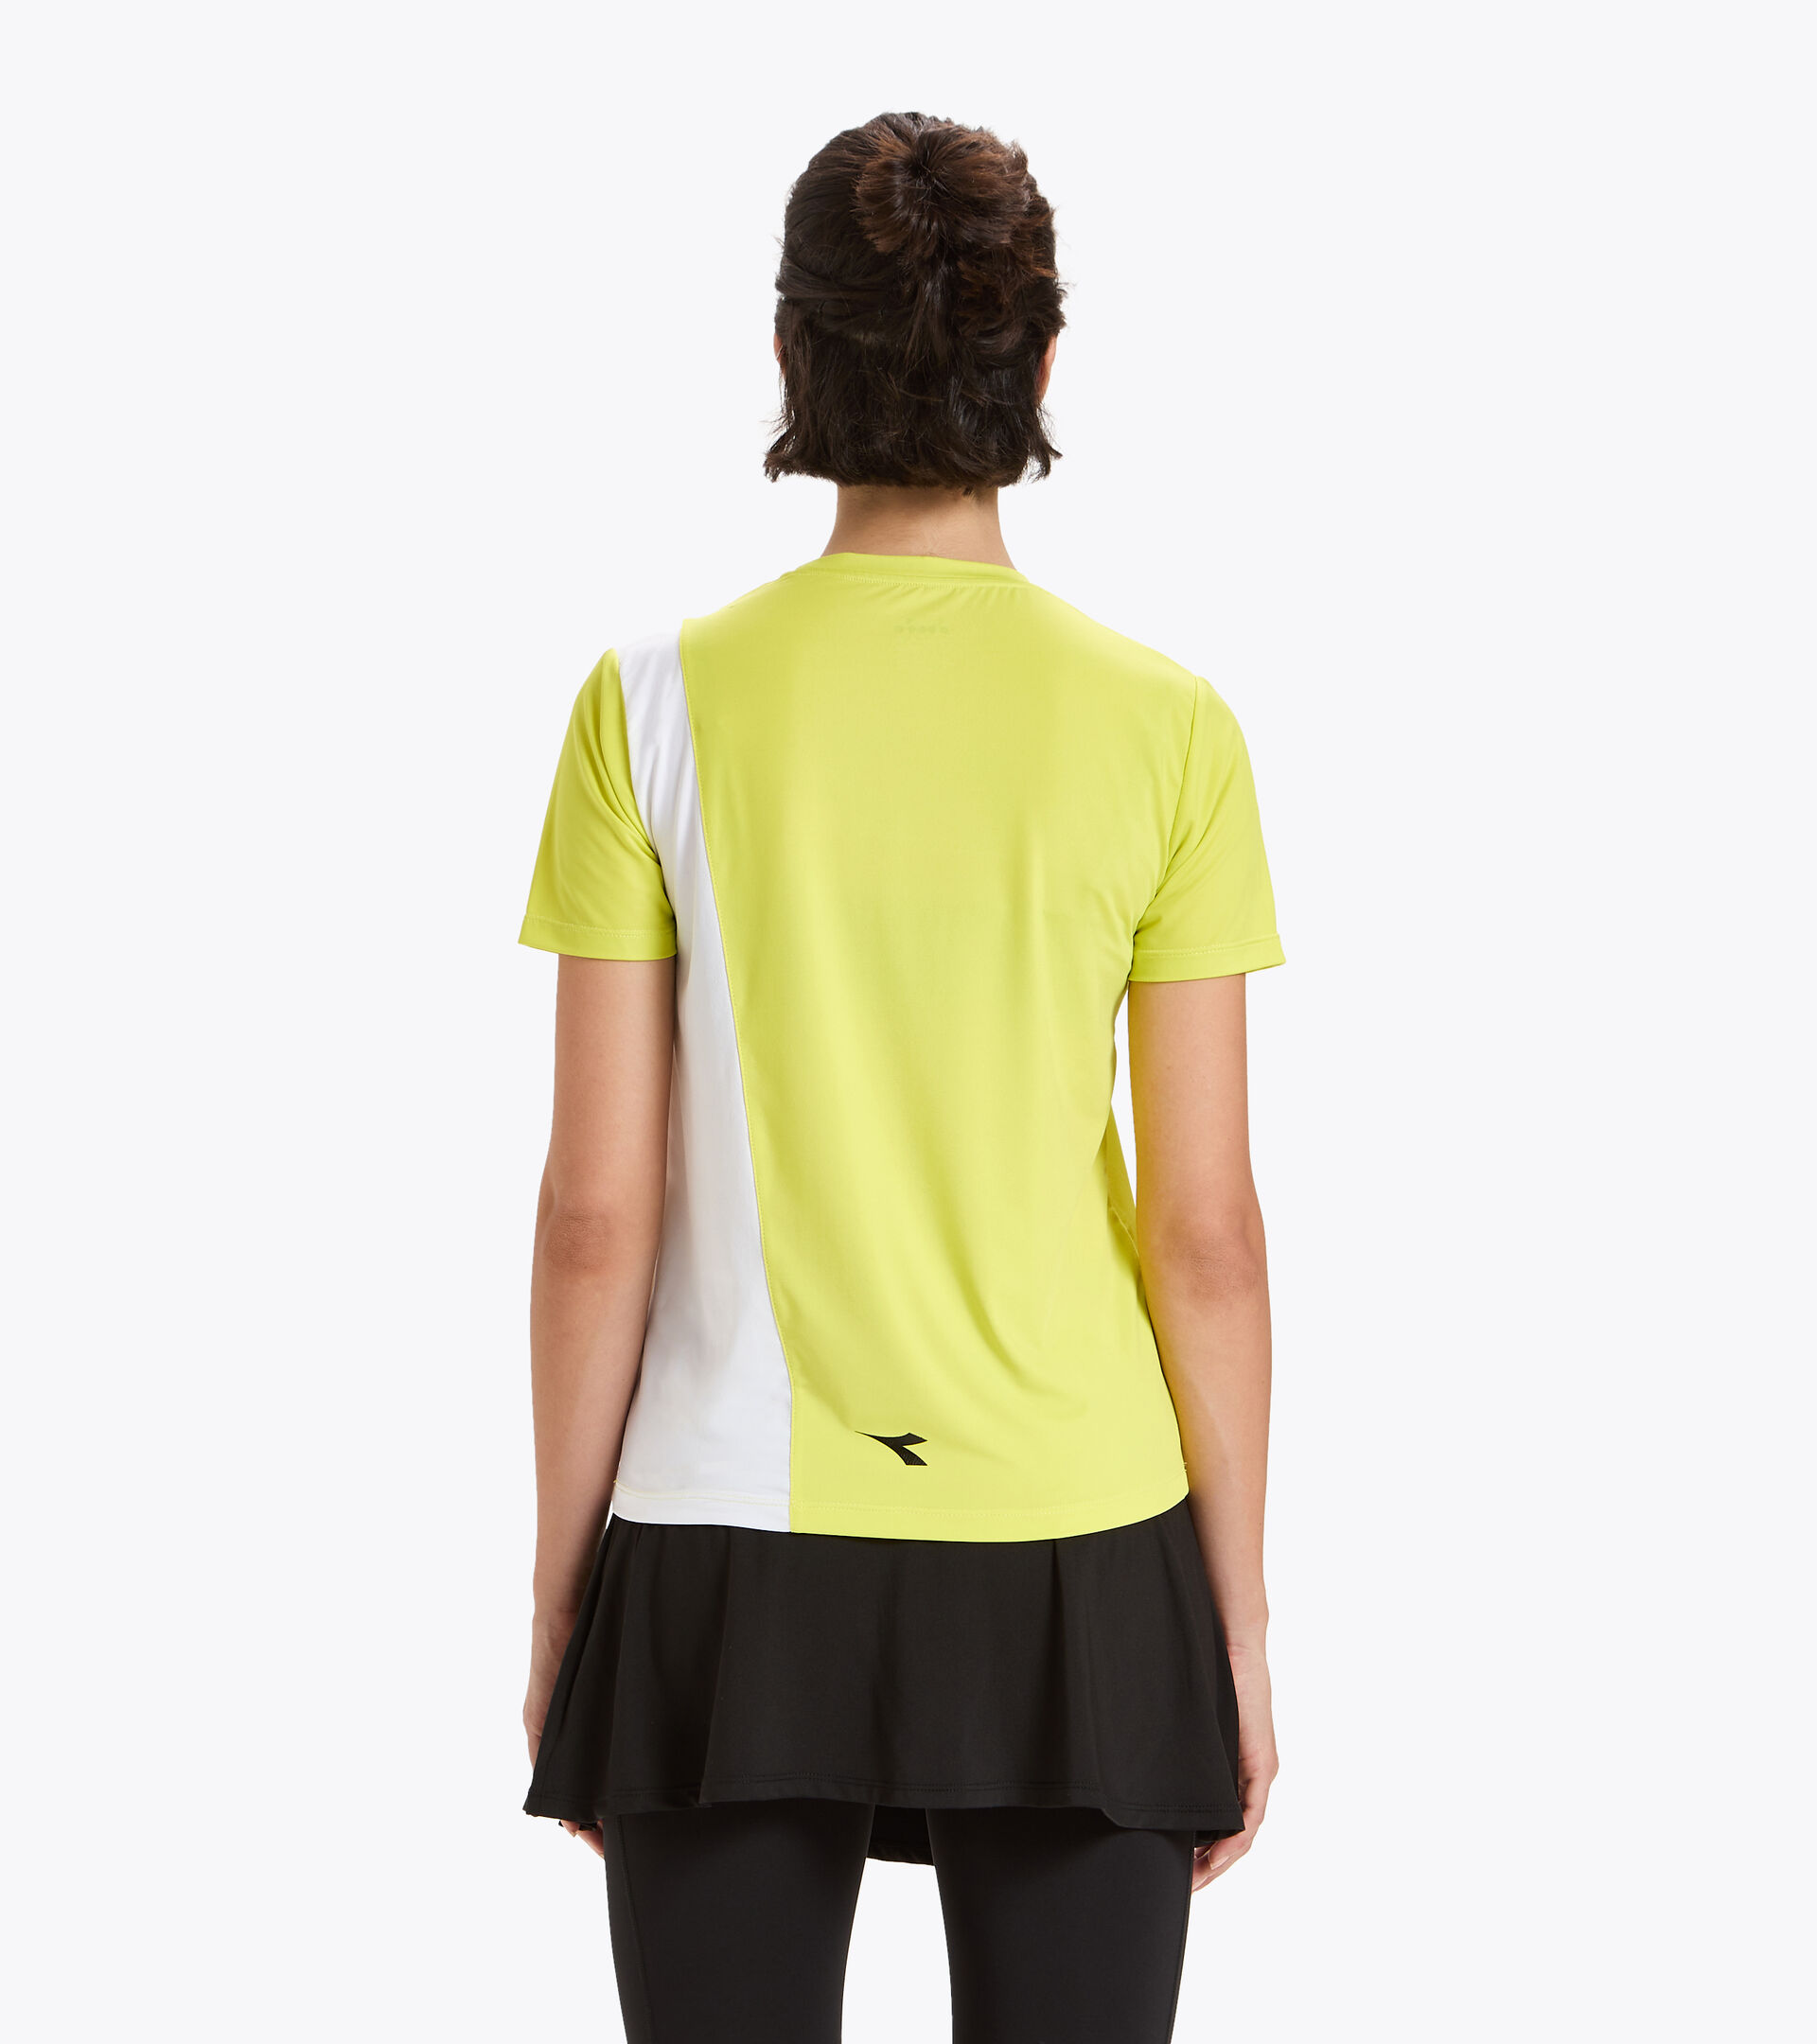 Tennis-T-Shirt - Damen L. SS T-SHIRT CHALLENGE SCHWEFELQUELLE - Diadora